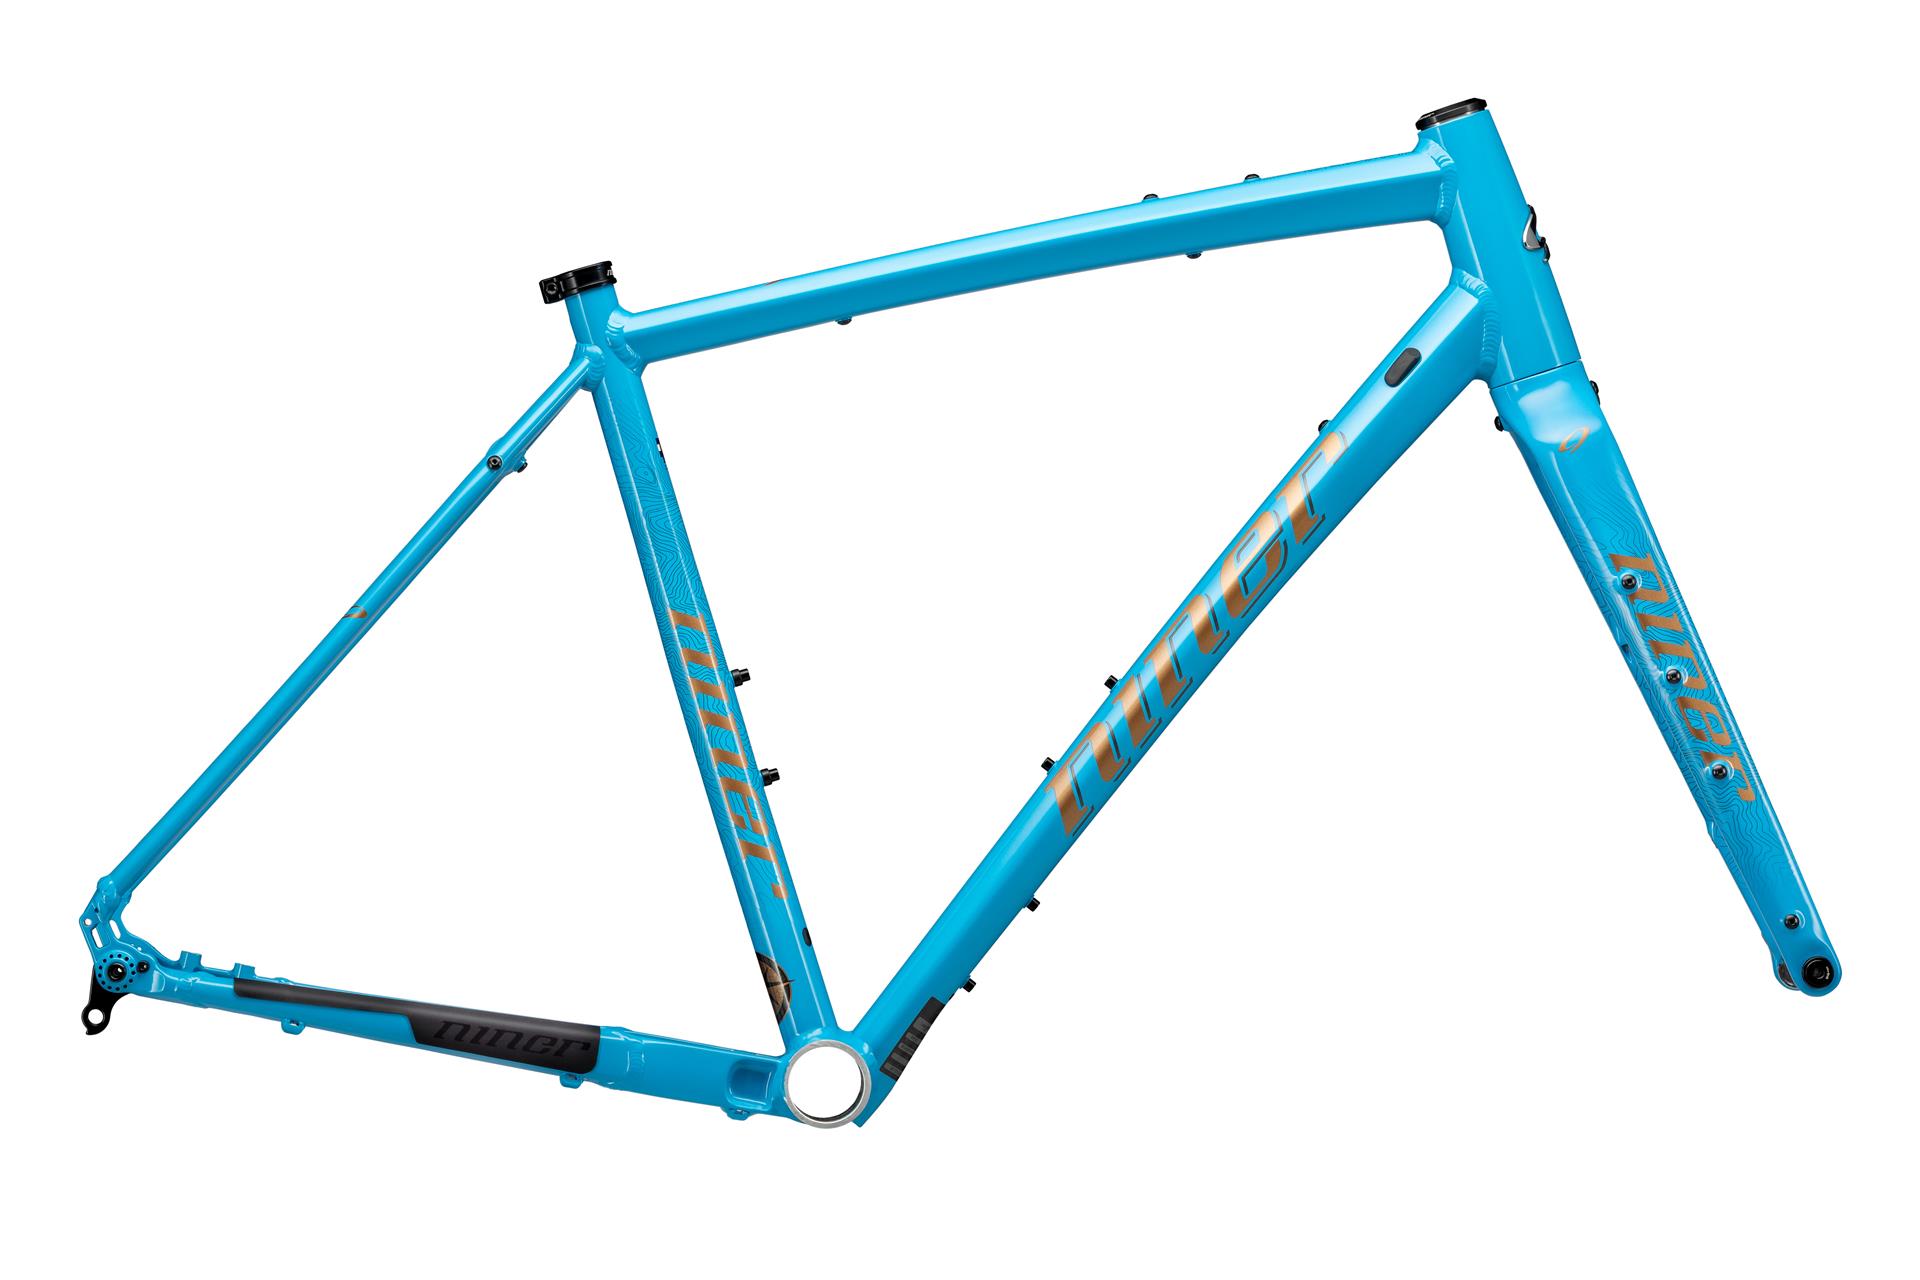 Niner RLT 2-star bike, Blue, 53